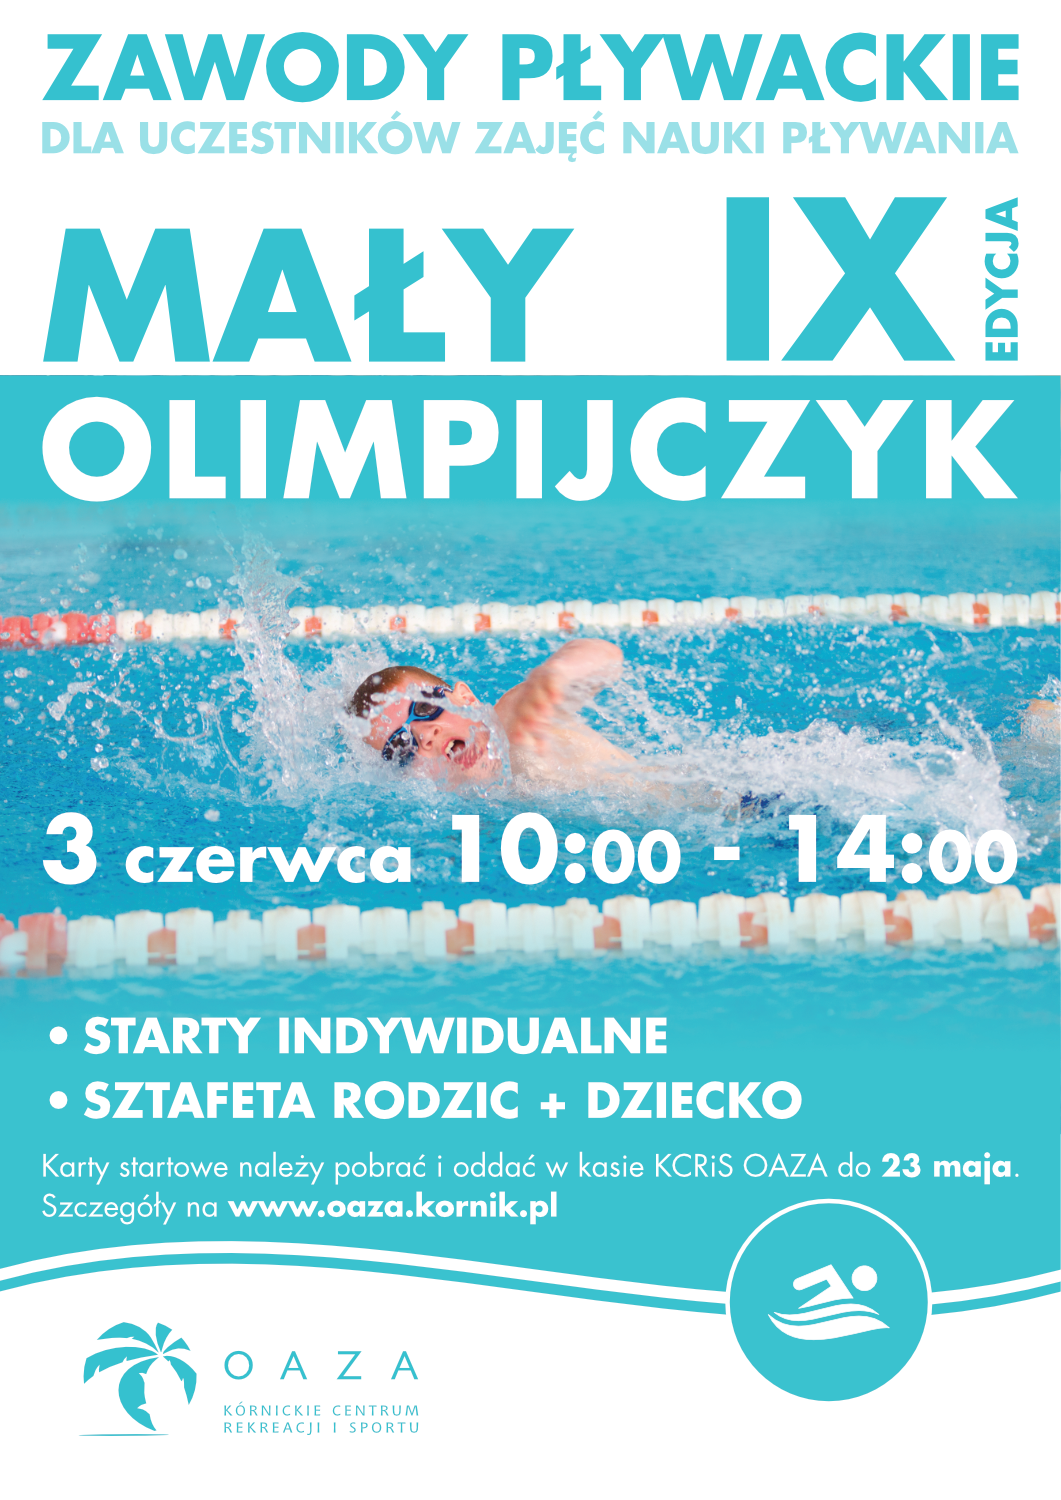 IX Zawody Pływackie Mały Olimpijczyk 